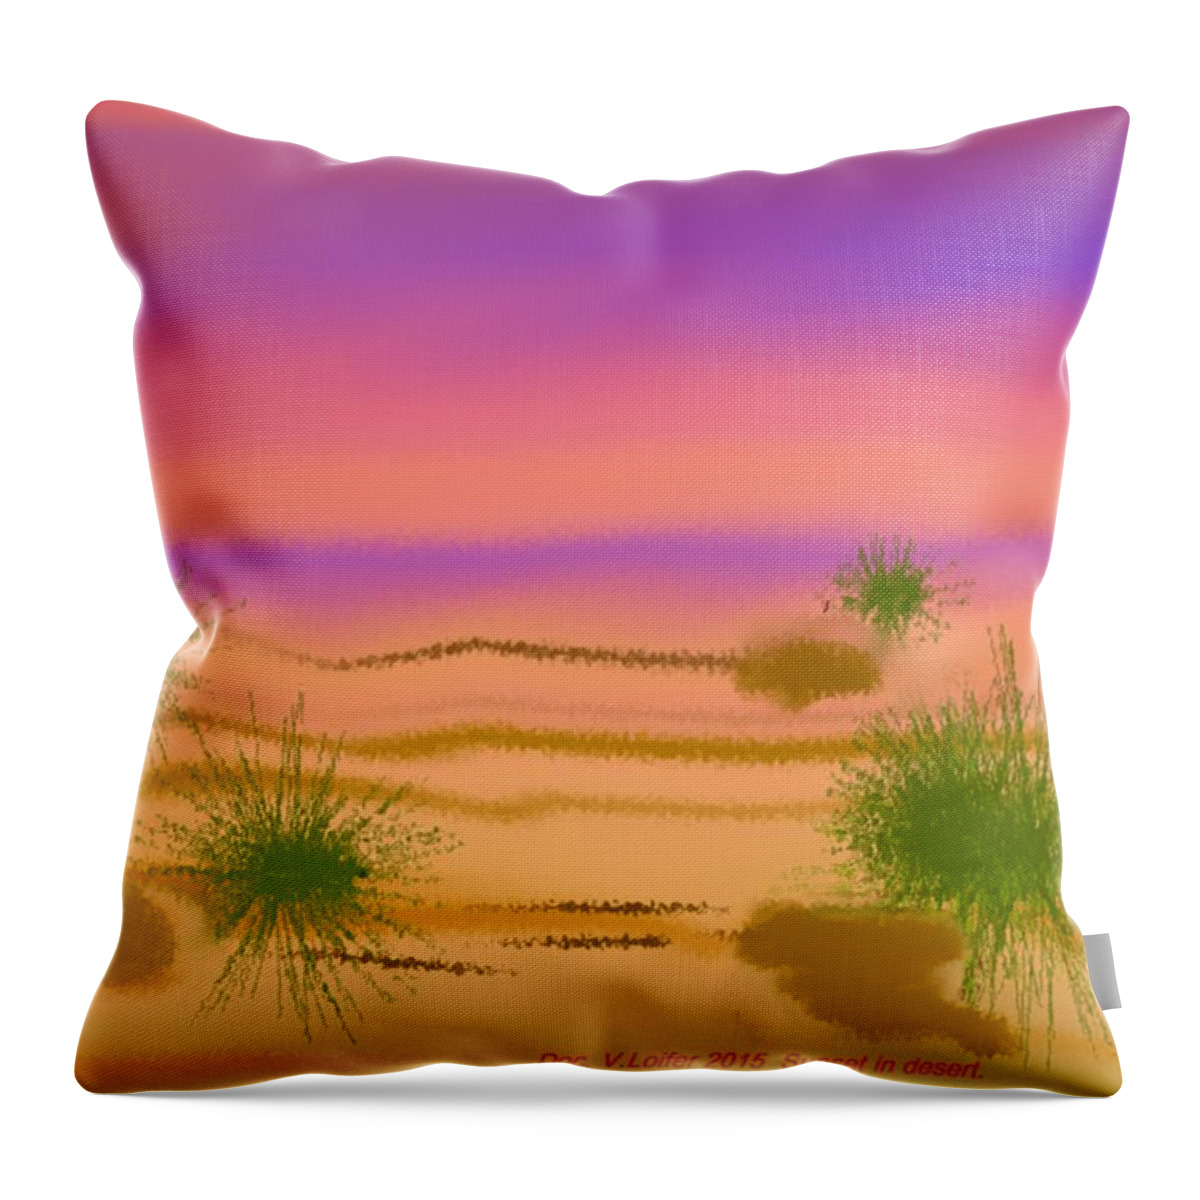 Sky Colors Evening Sunset Desert Heat Shadow Throw Pillow featuring the digital art Sunset in desert. by Dr Loifer Vladimir